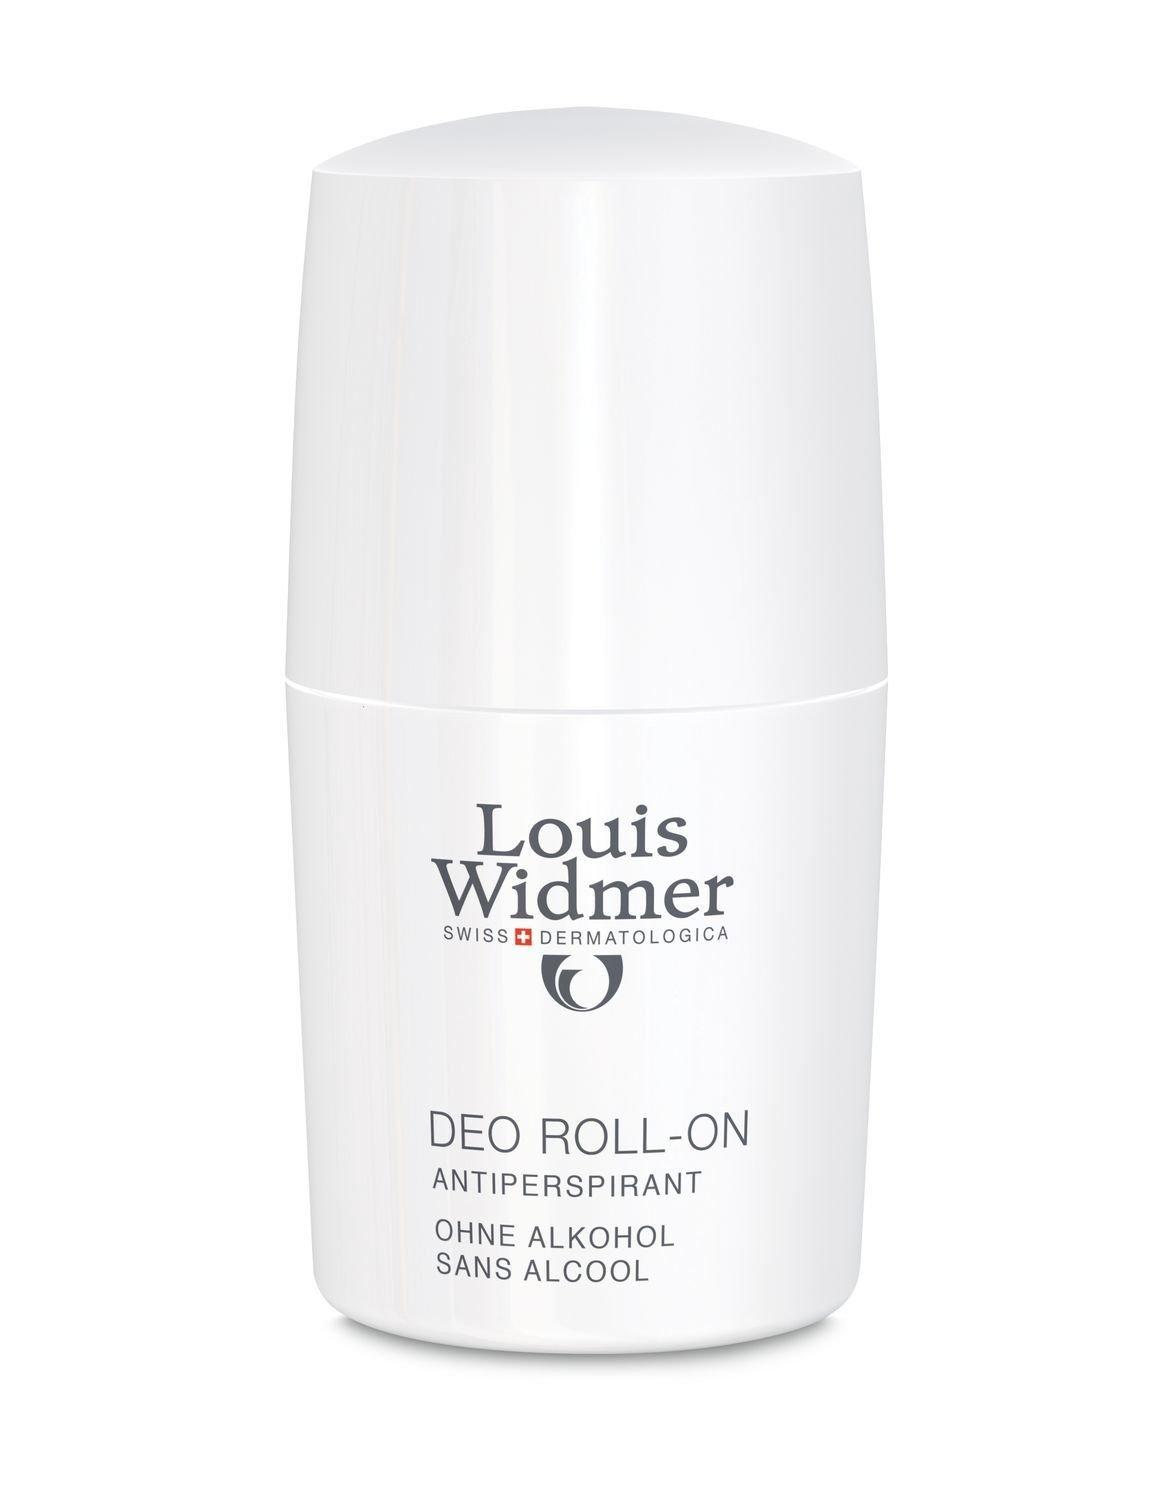 Image of Louis Widmer Deo Roll-On parfümiert - 50ml